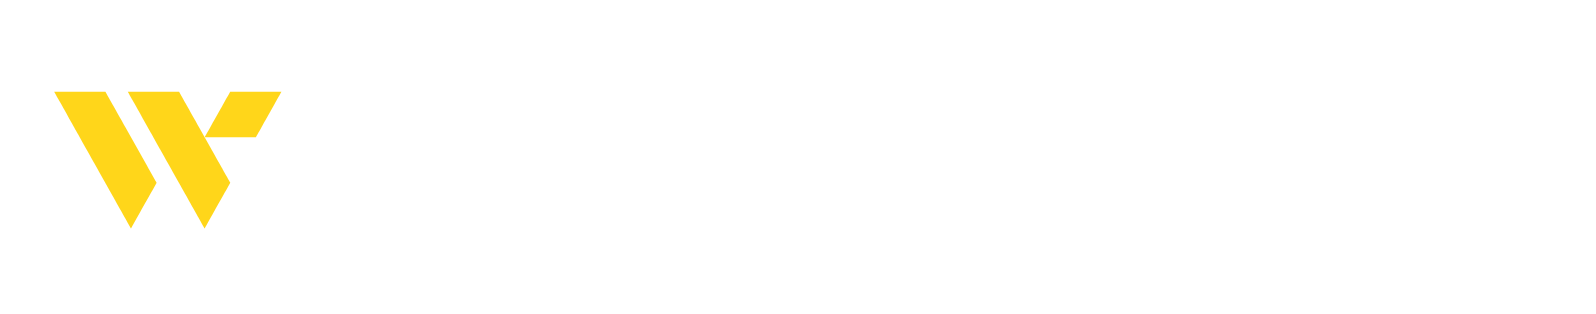 Webster Financial Logo groß für dunkle Hintergründe (transparentes PNG)